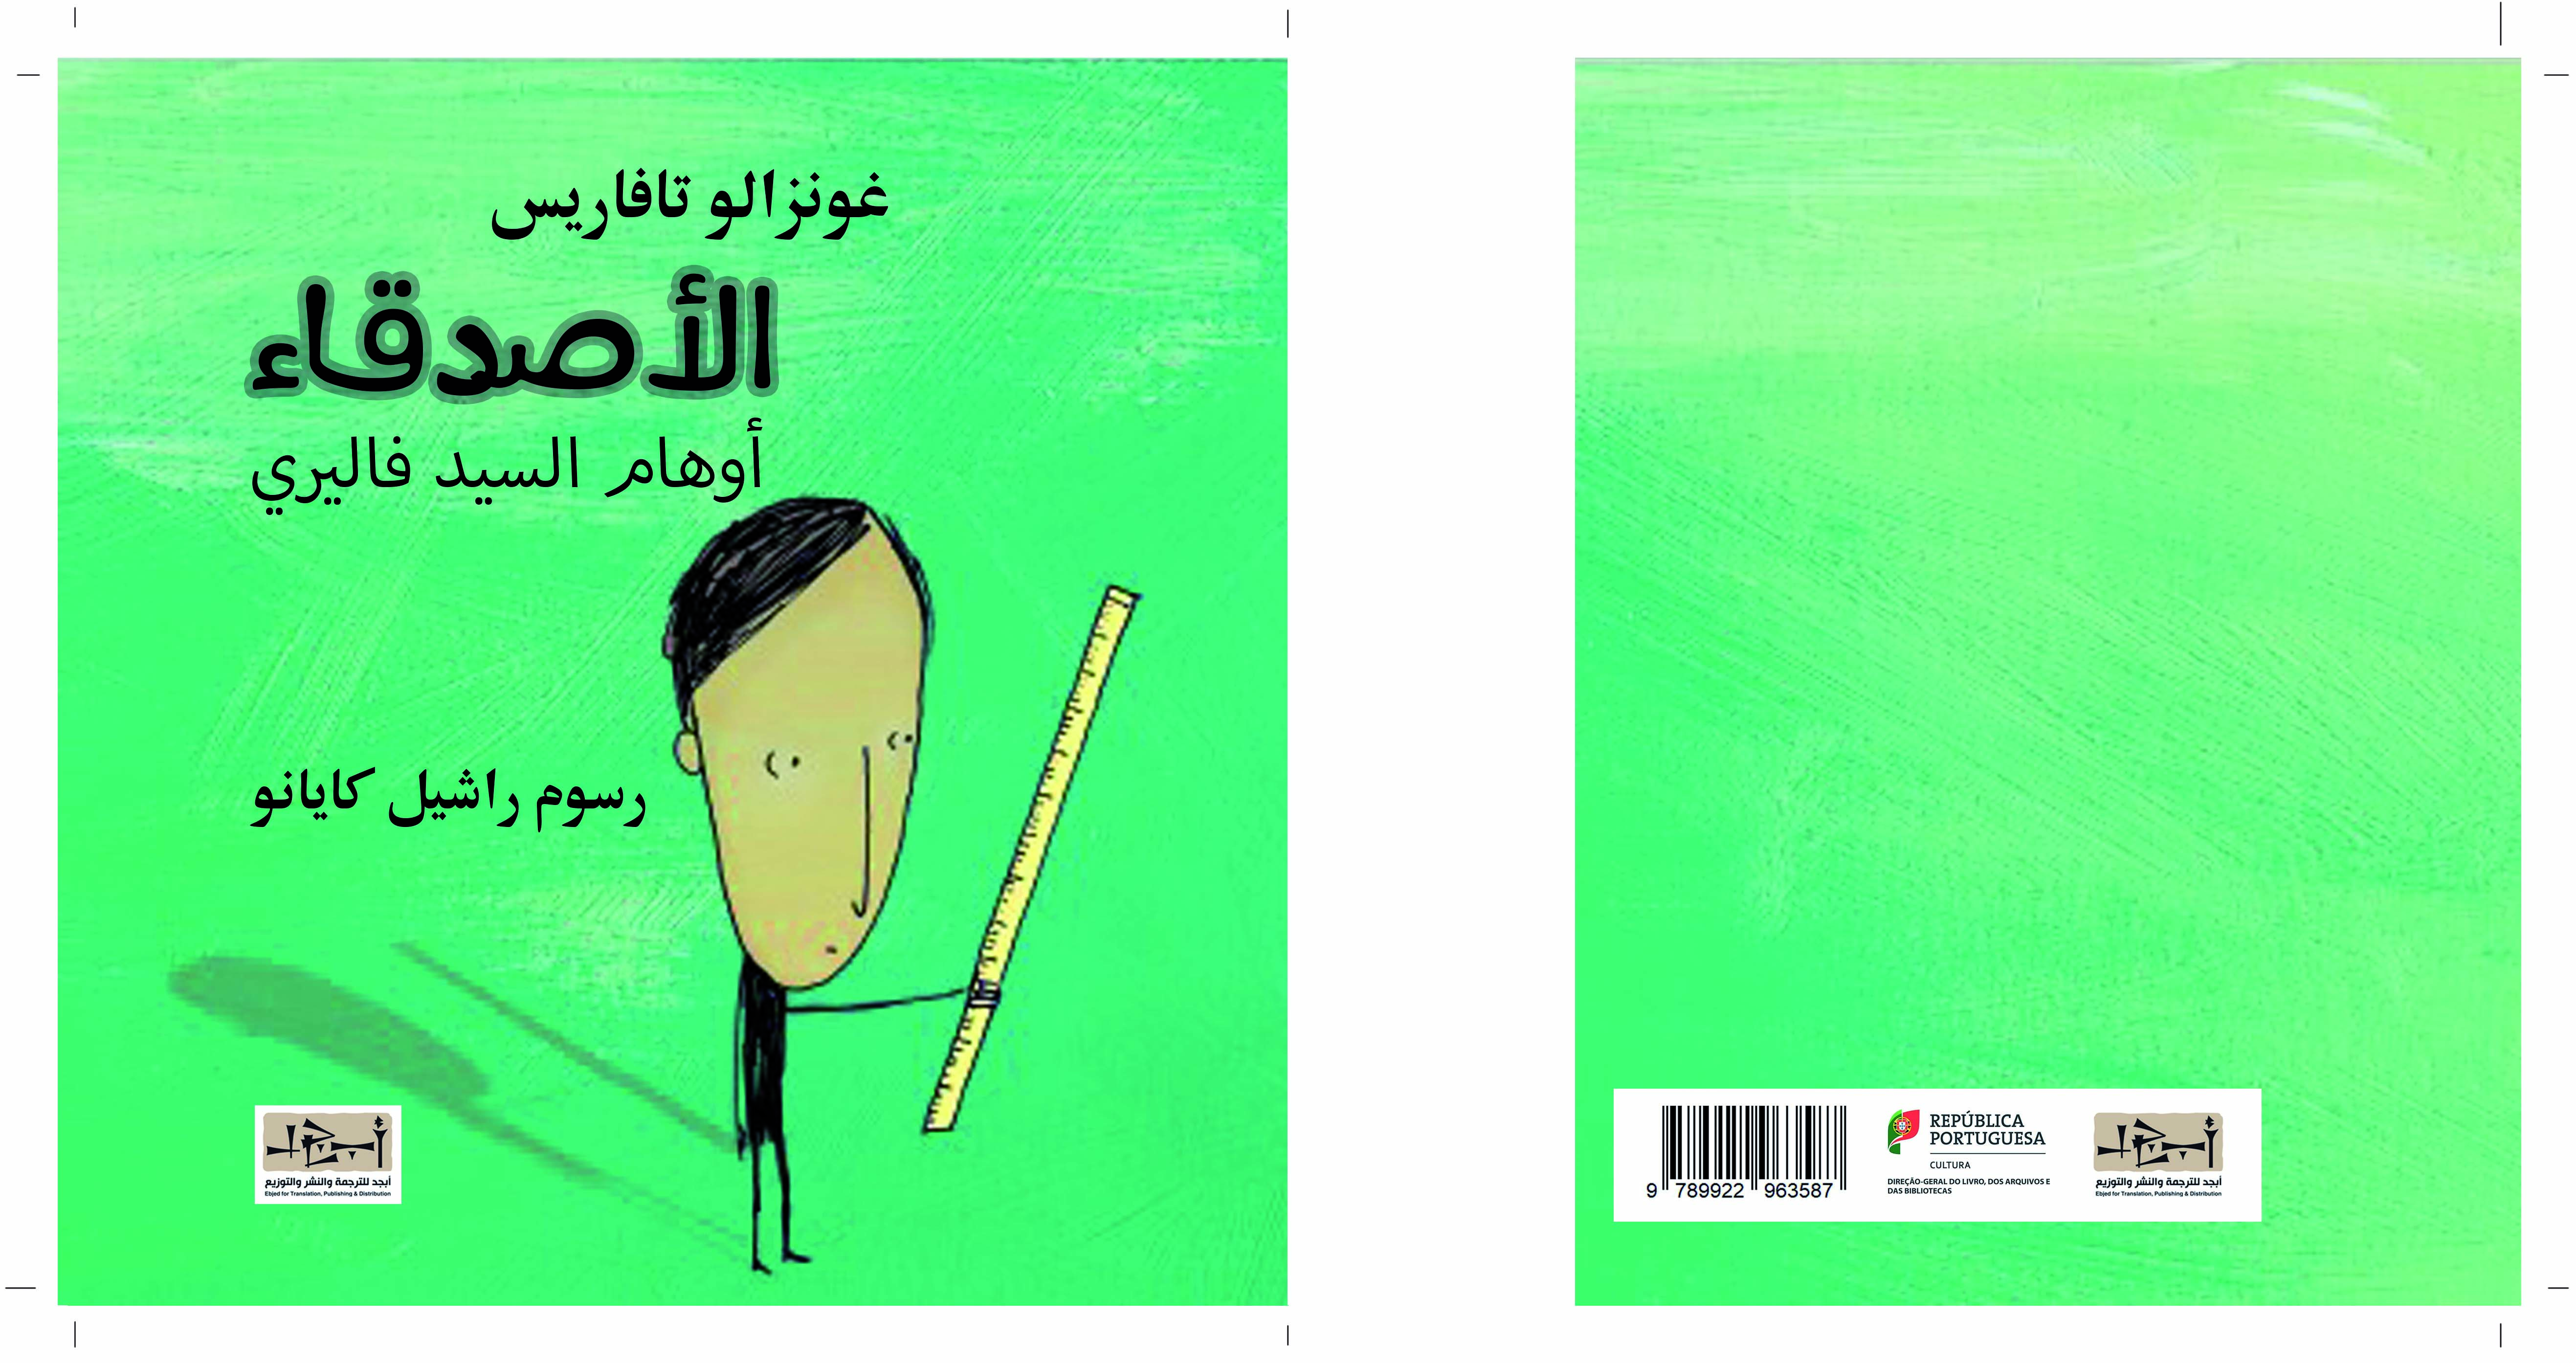 الاصدقاء - كتاب اطفال - ترجمة عبد الهادي السعدون